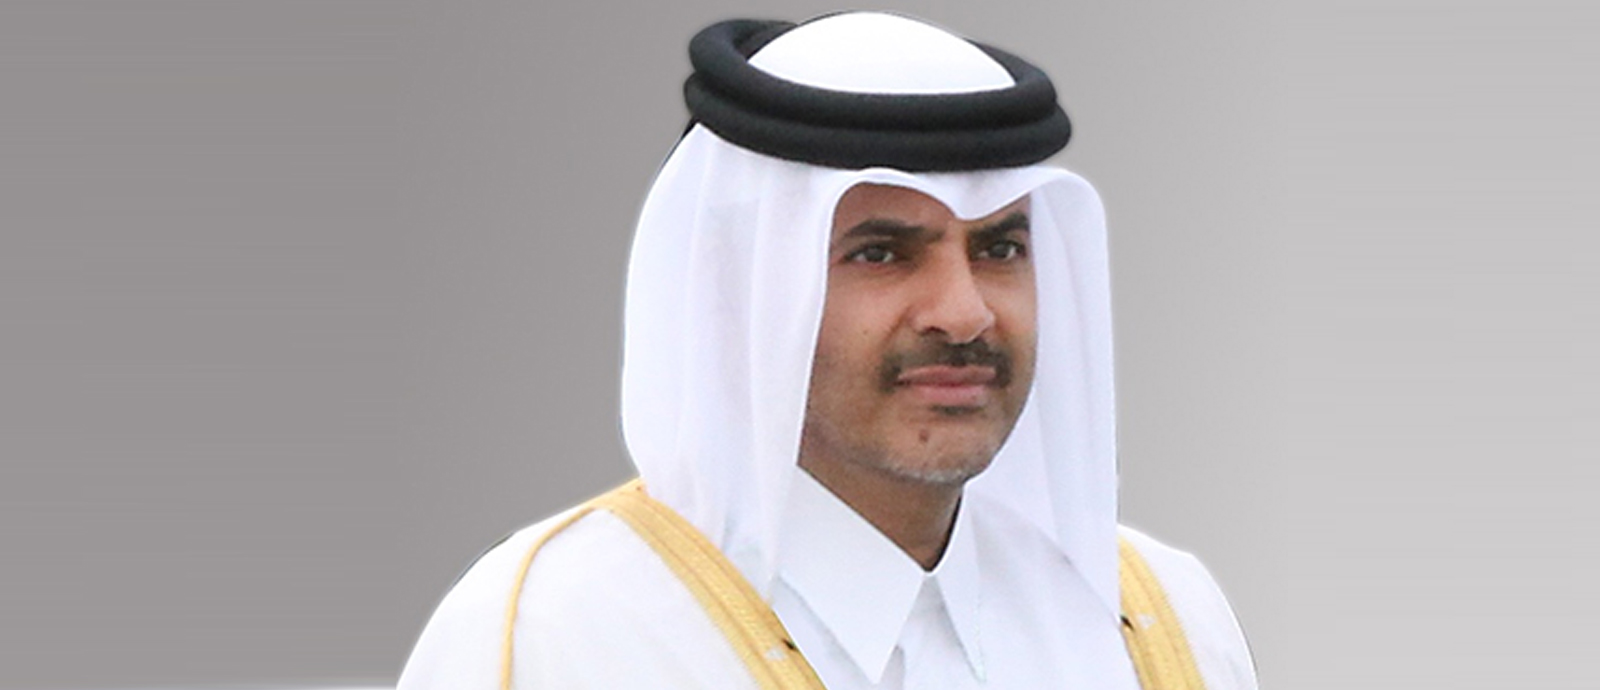 معالي الشيخ خالد بن خليفة بن عبدالعزيز آل ثاني رئيس مجلس الوزراء ووزير الداخلية